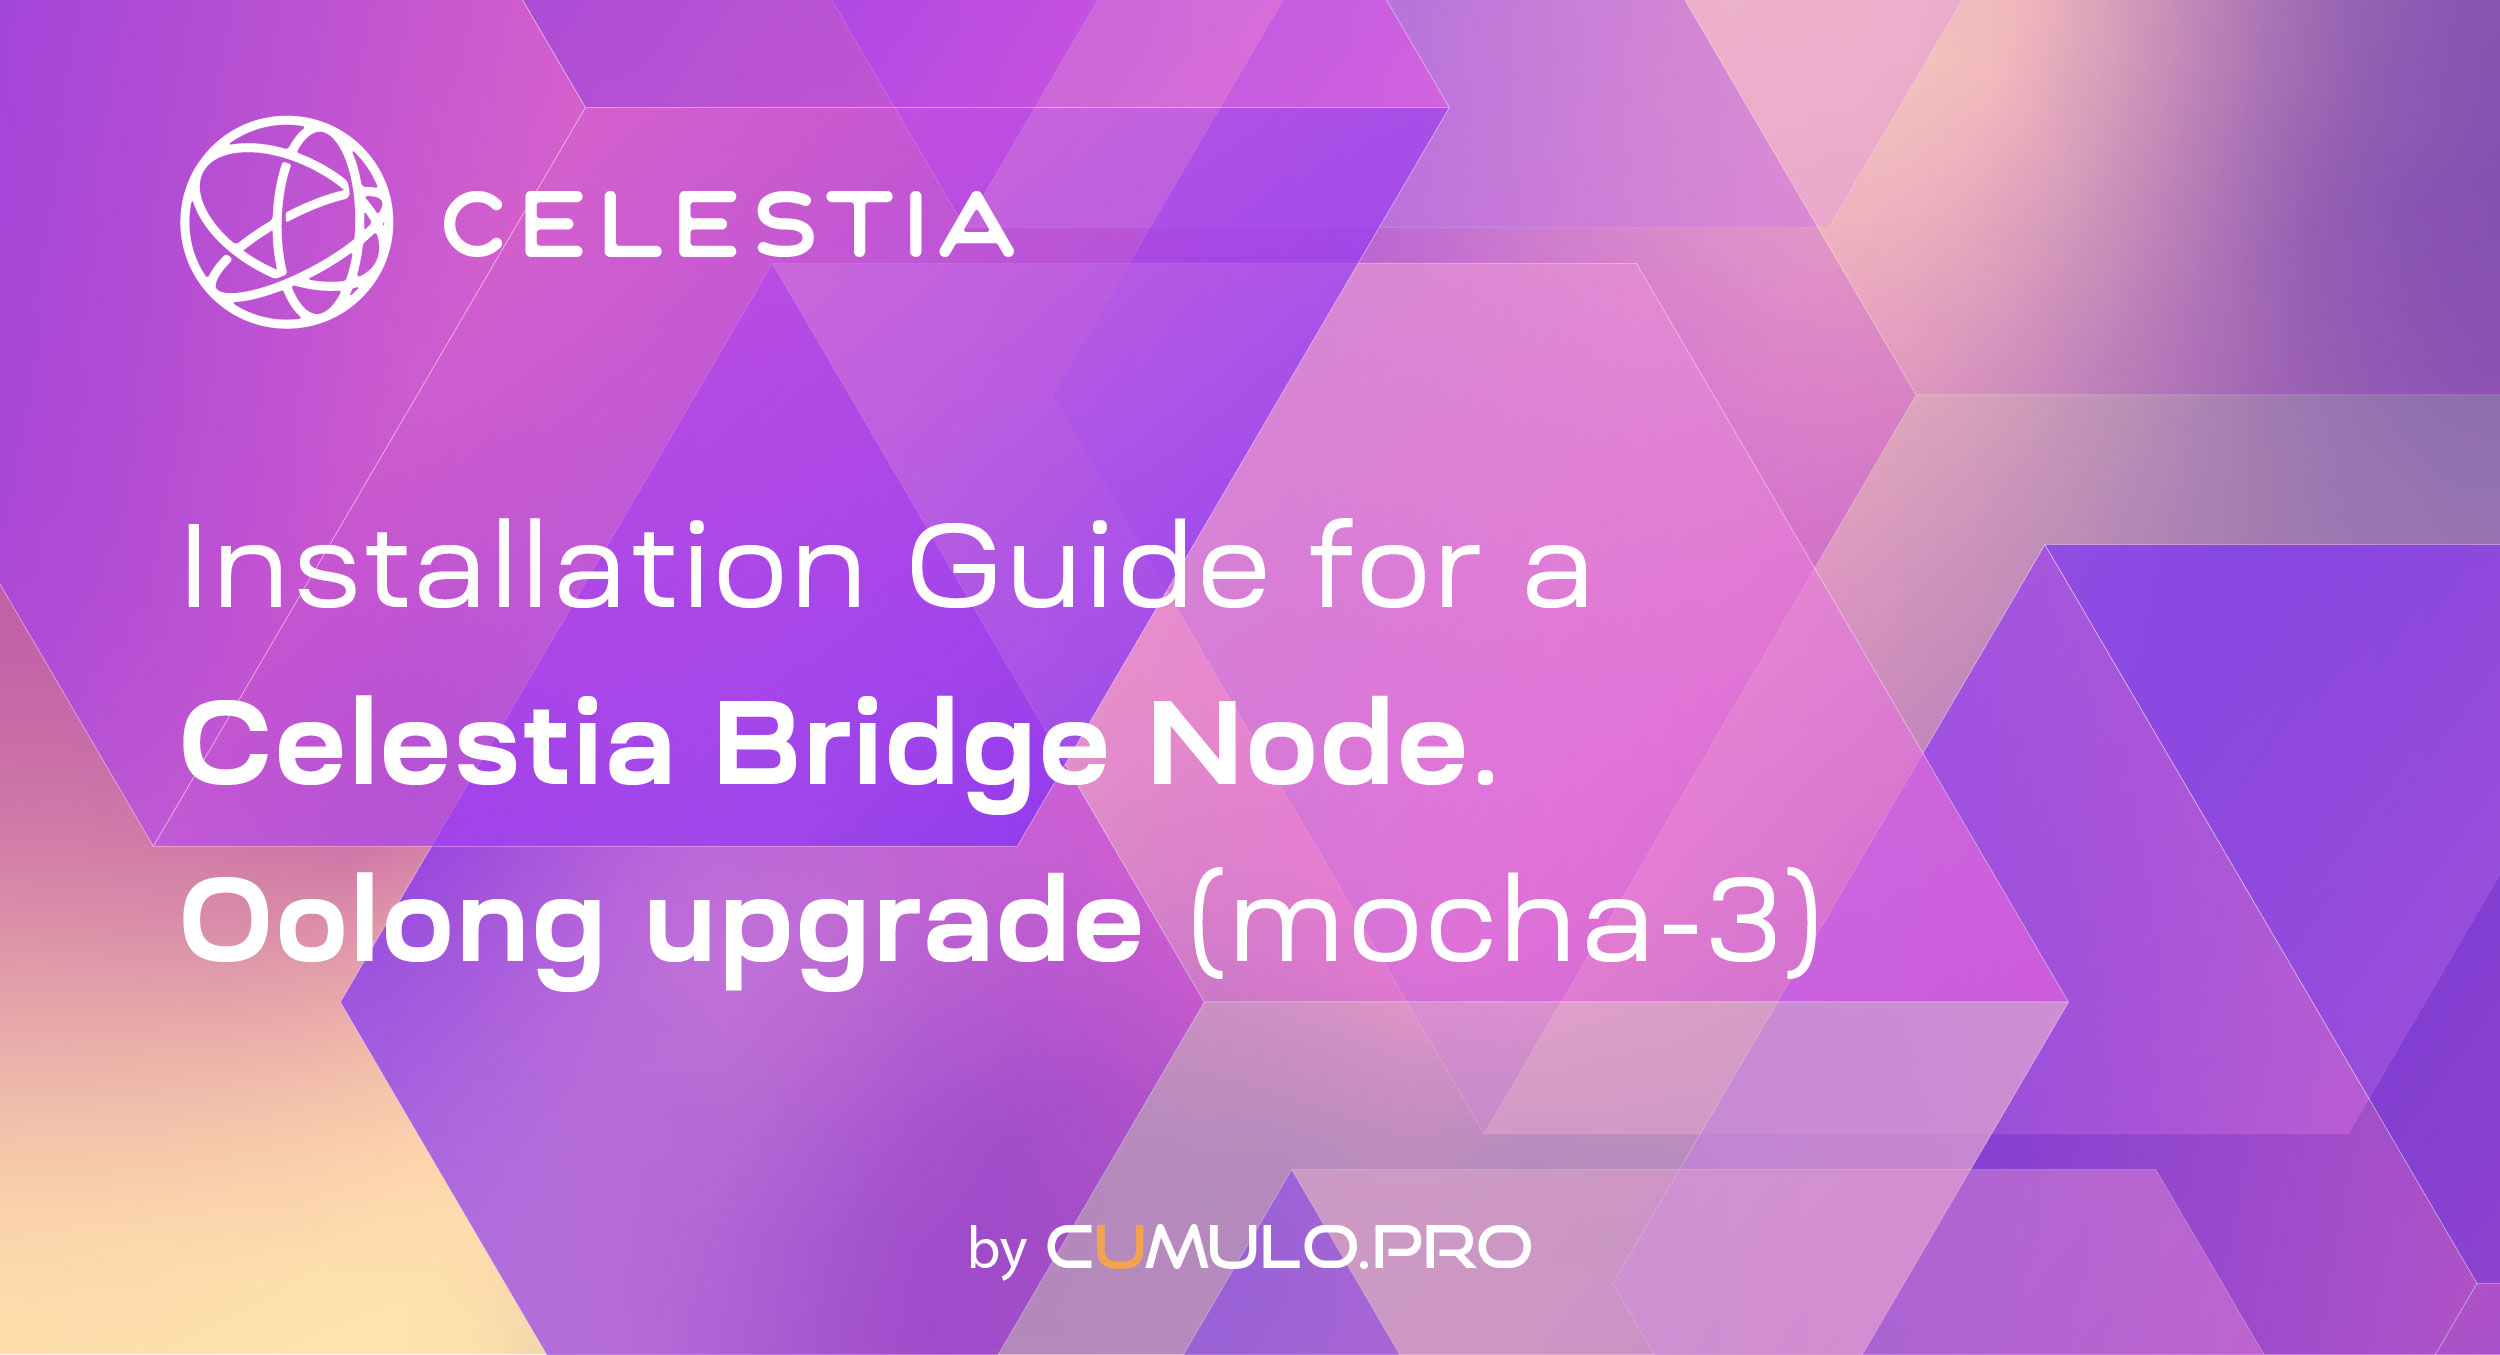 Installation Guide for a Celestia Bridge Node. Oolong upgrade (mocha-3)